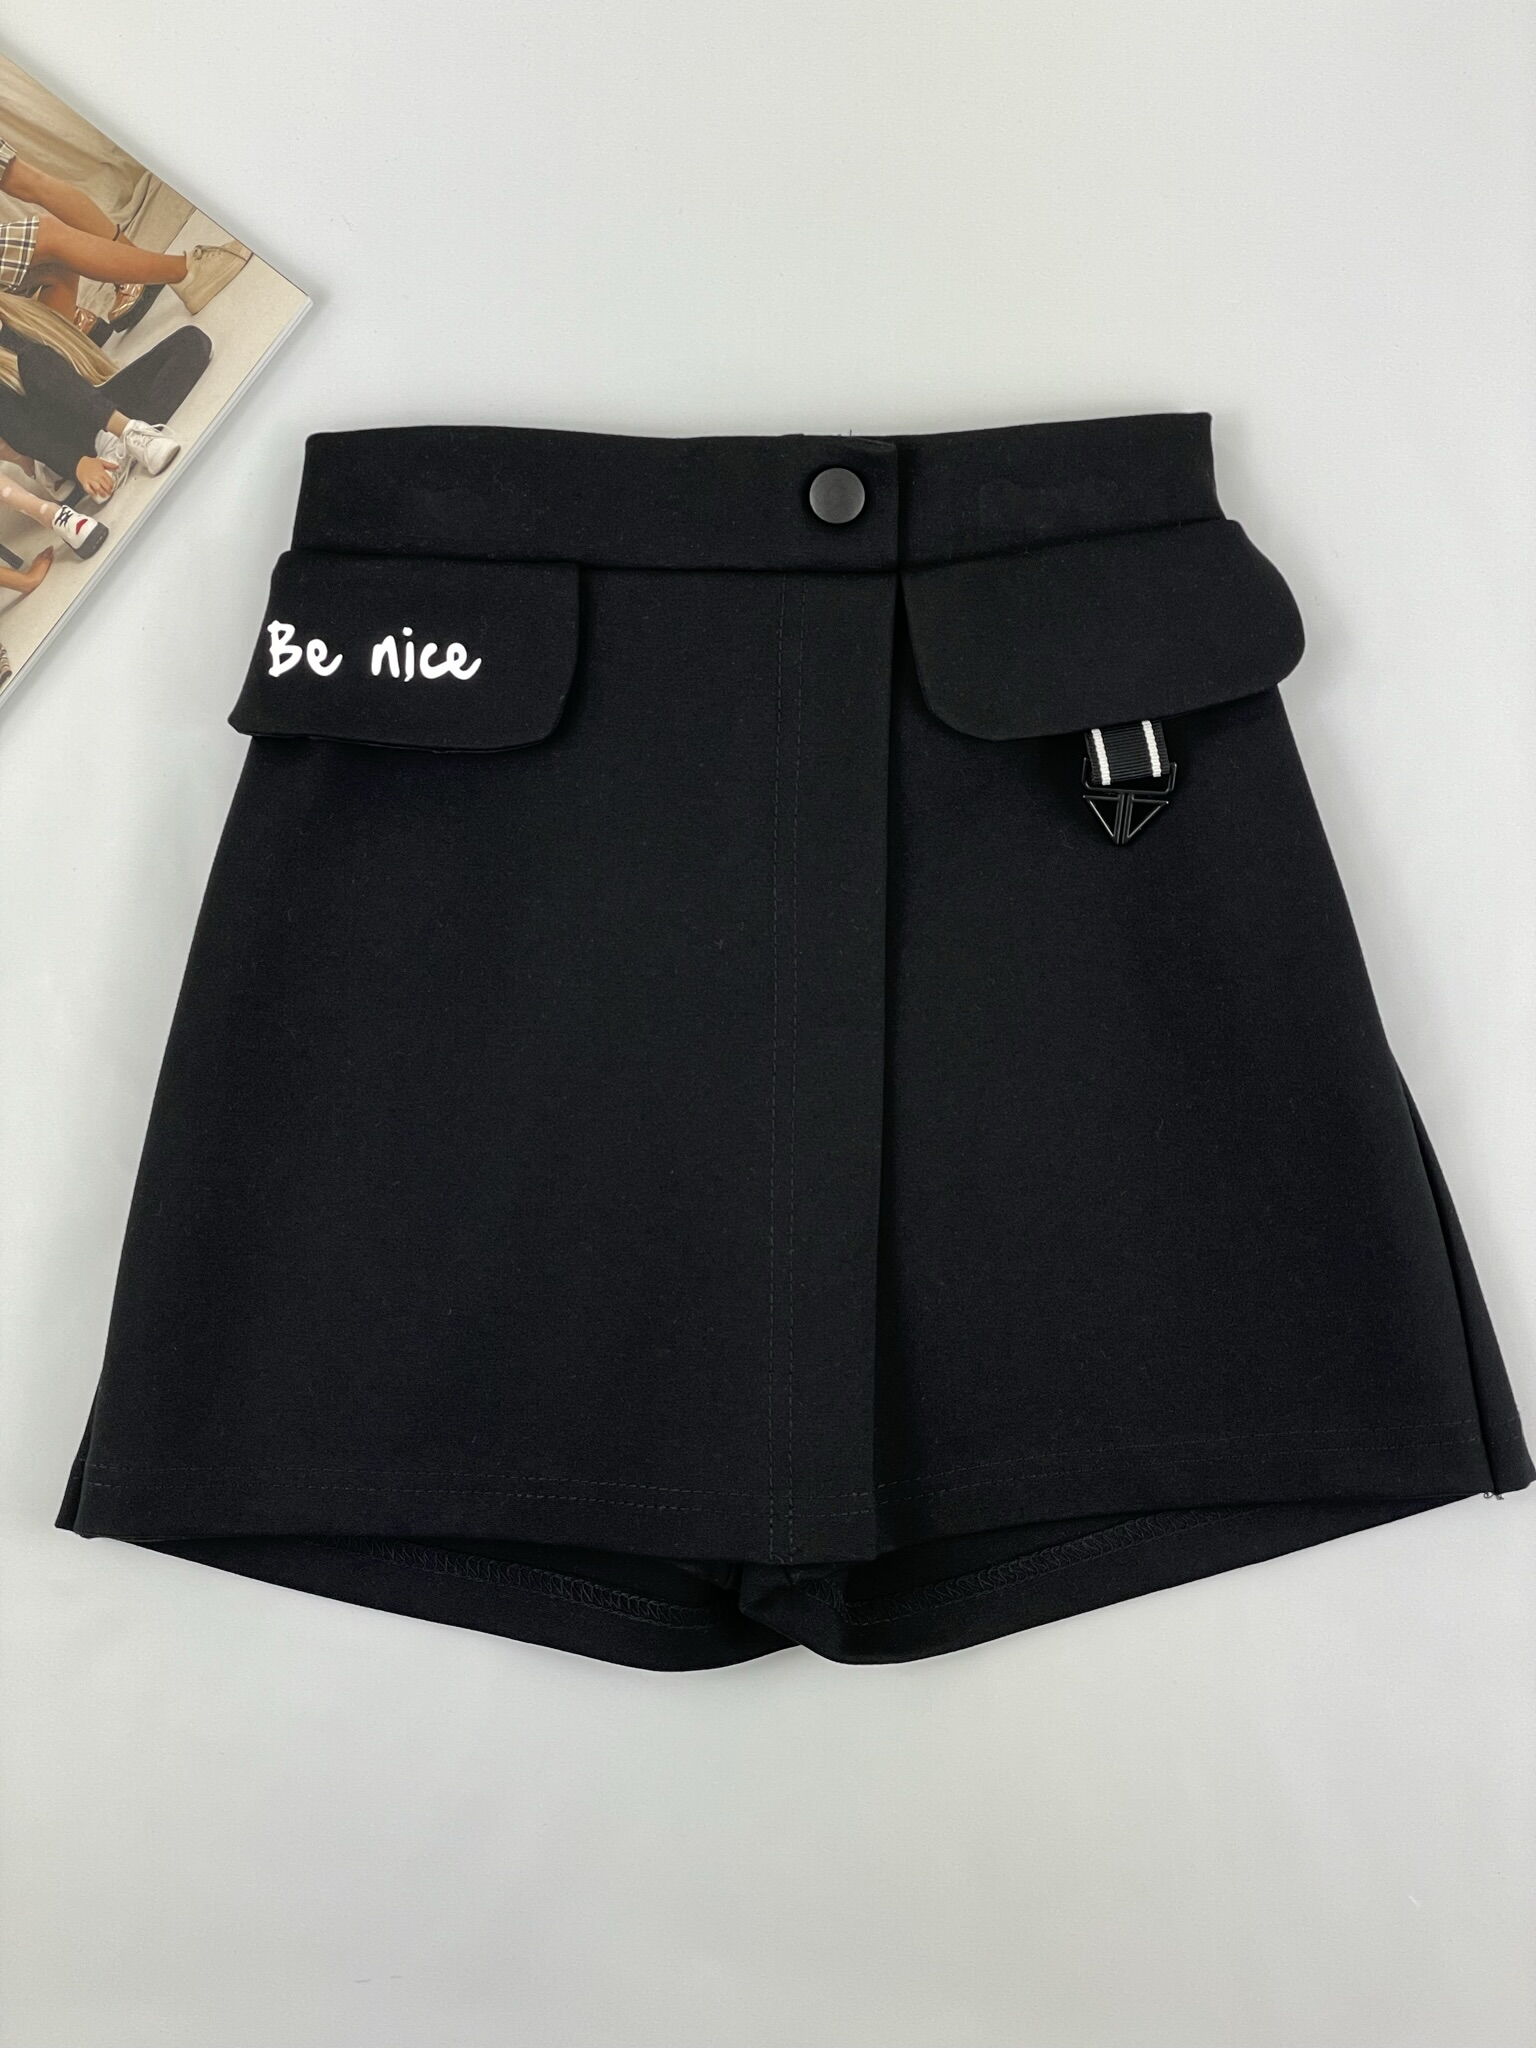 Юбка-шорты для девочки Mevis черная 4110-02 - фотография